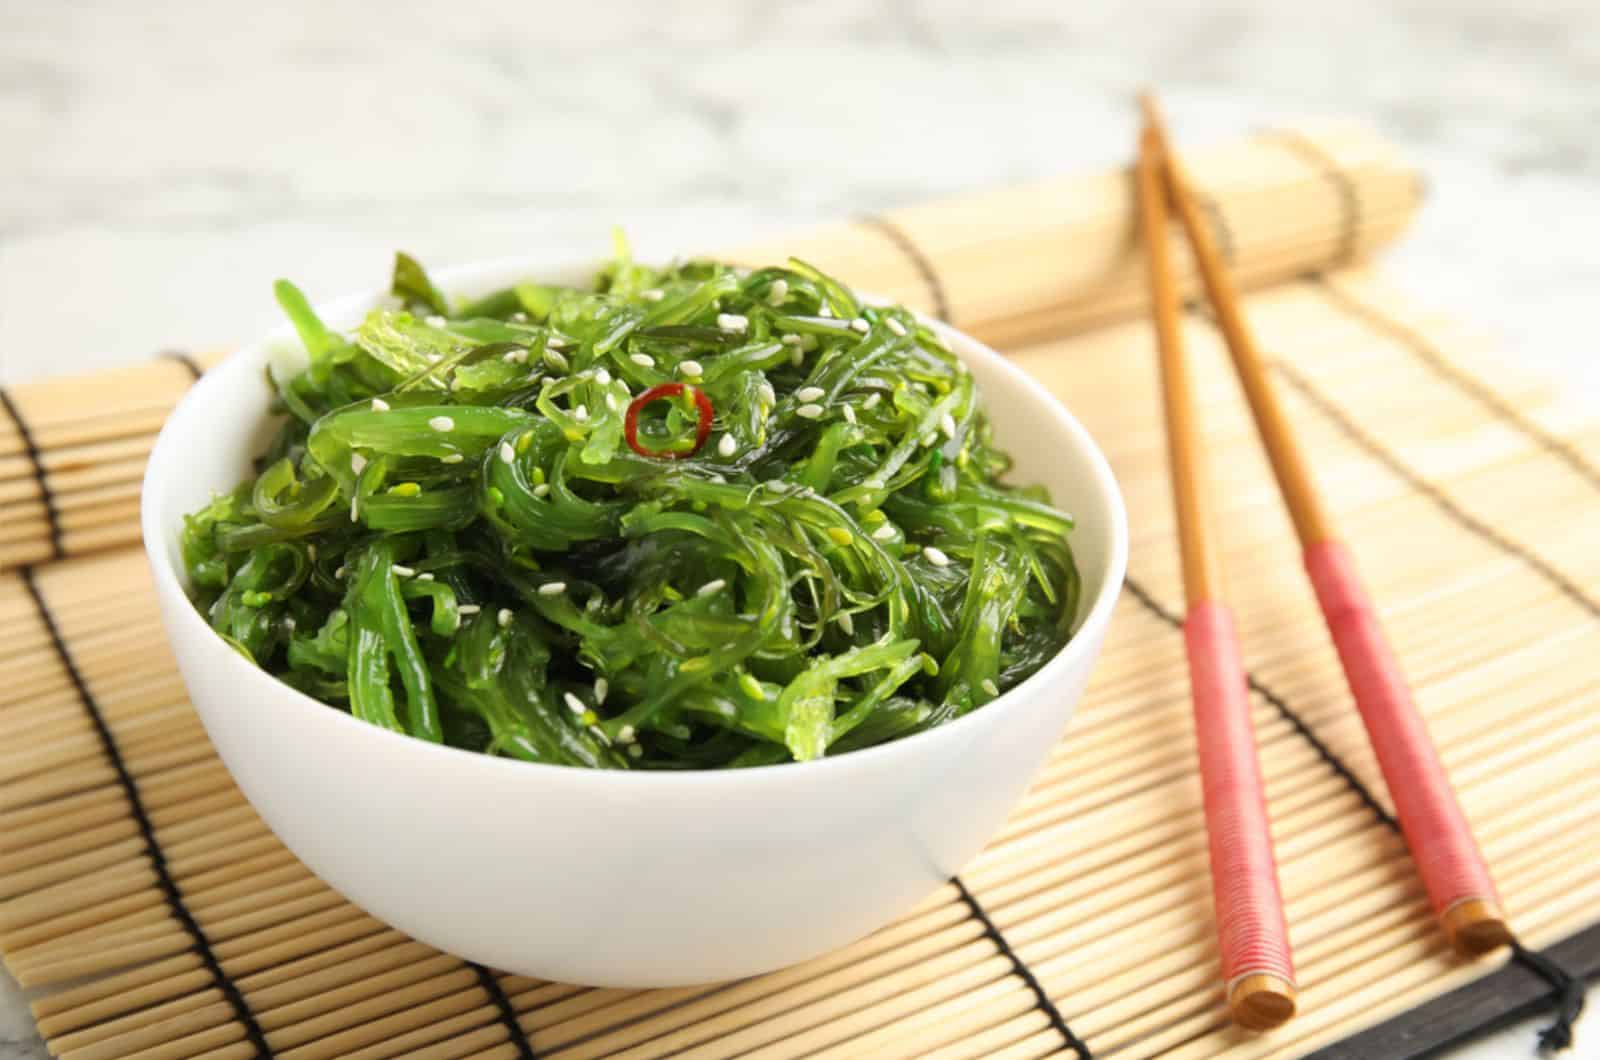 Japanese seaweed salad served on table